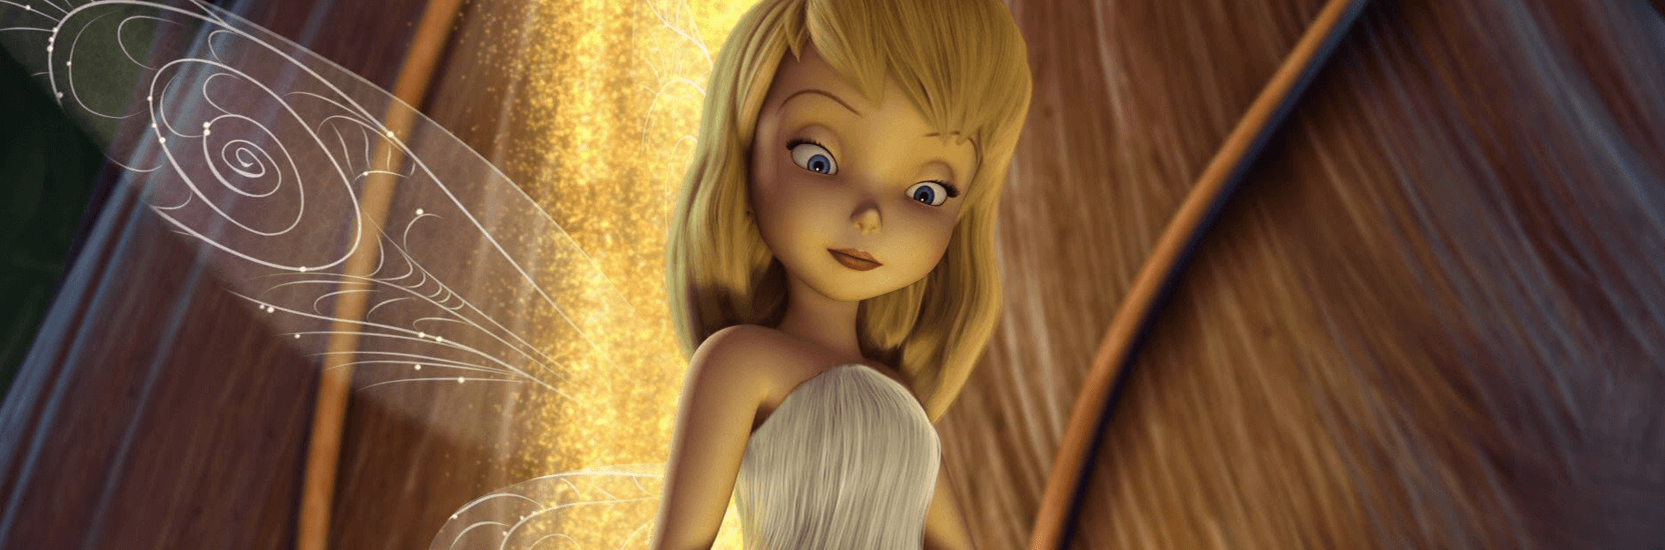 La fée Clochette n'est pas noire” Le nouveau film de Disney attaqué par des  réactionnaires 